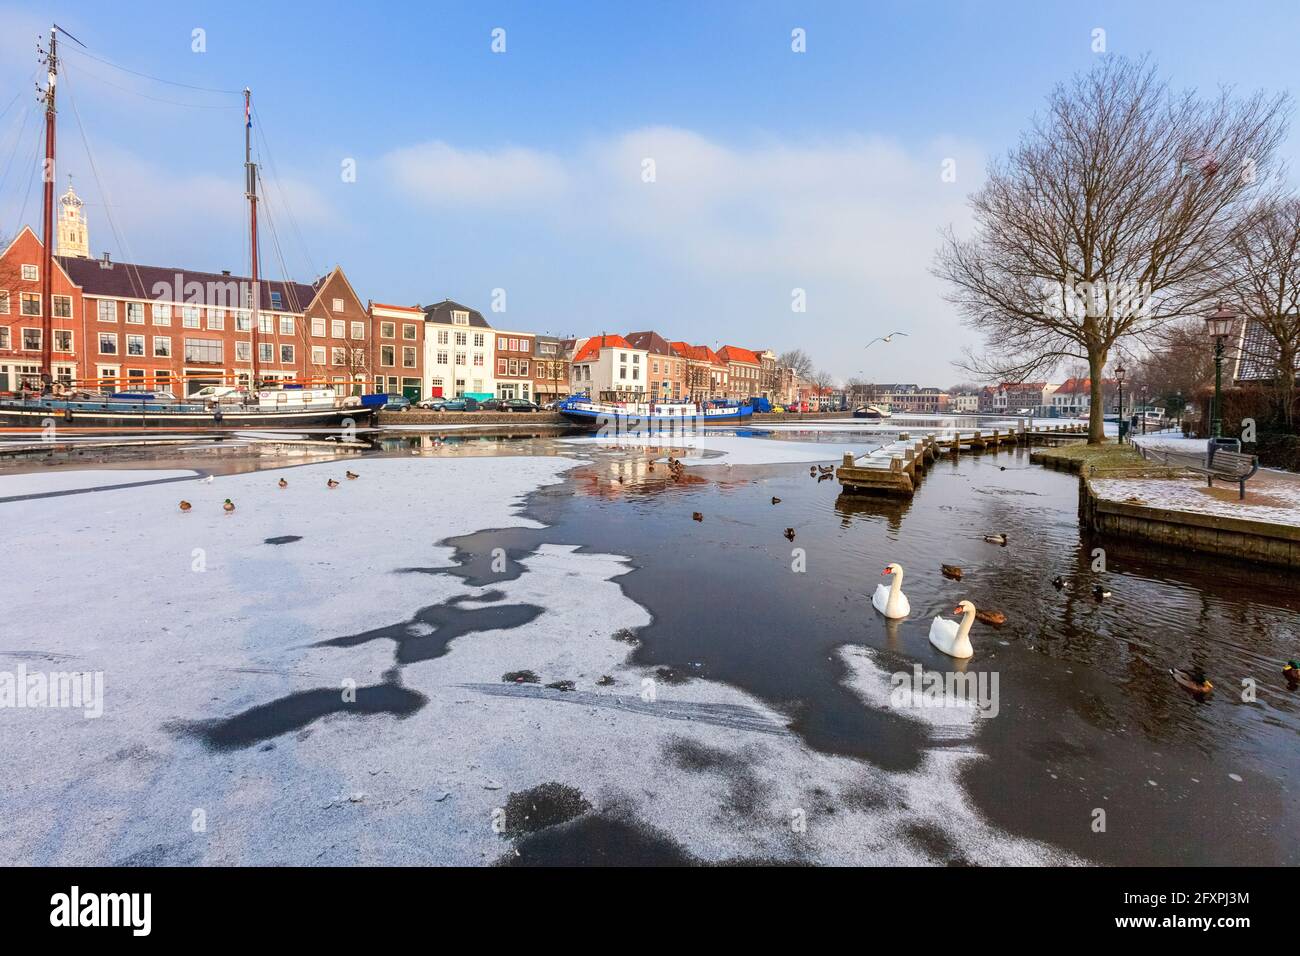 Cygnes blancs dans l'eau gelée du canal de la rivière Spaarne, Haarlem, quartier d'Amsterdam, Hollande du Nord, pays-Bas, Europe Banque D'Images